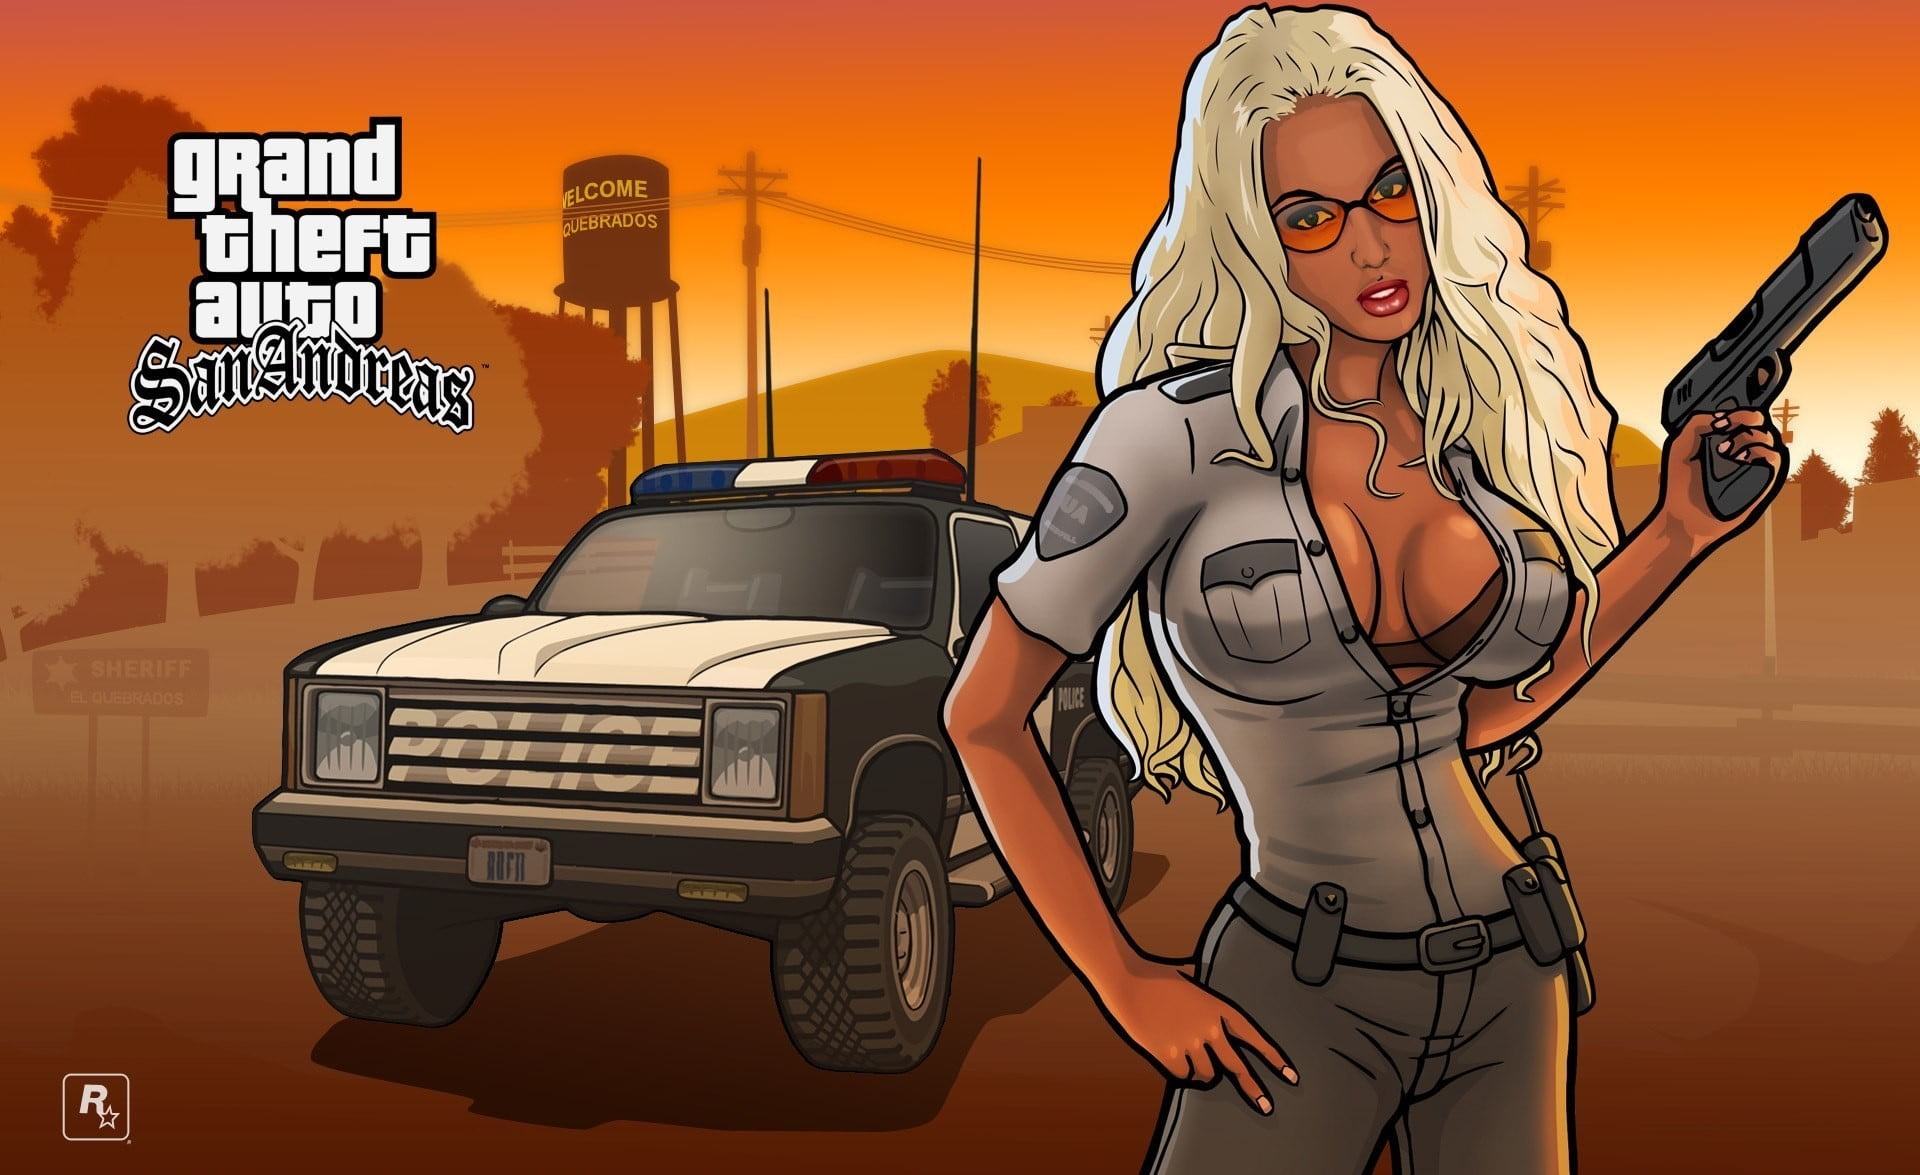 TA San Andreas wallpaper, Rockstar Games, Grand Theft Auto San Andreas